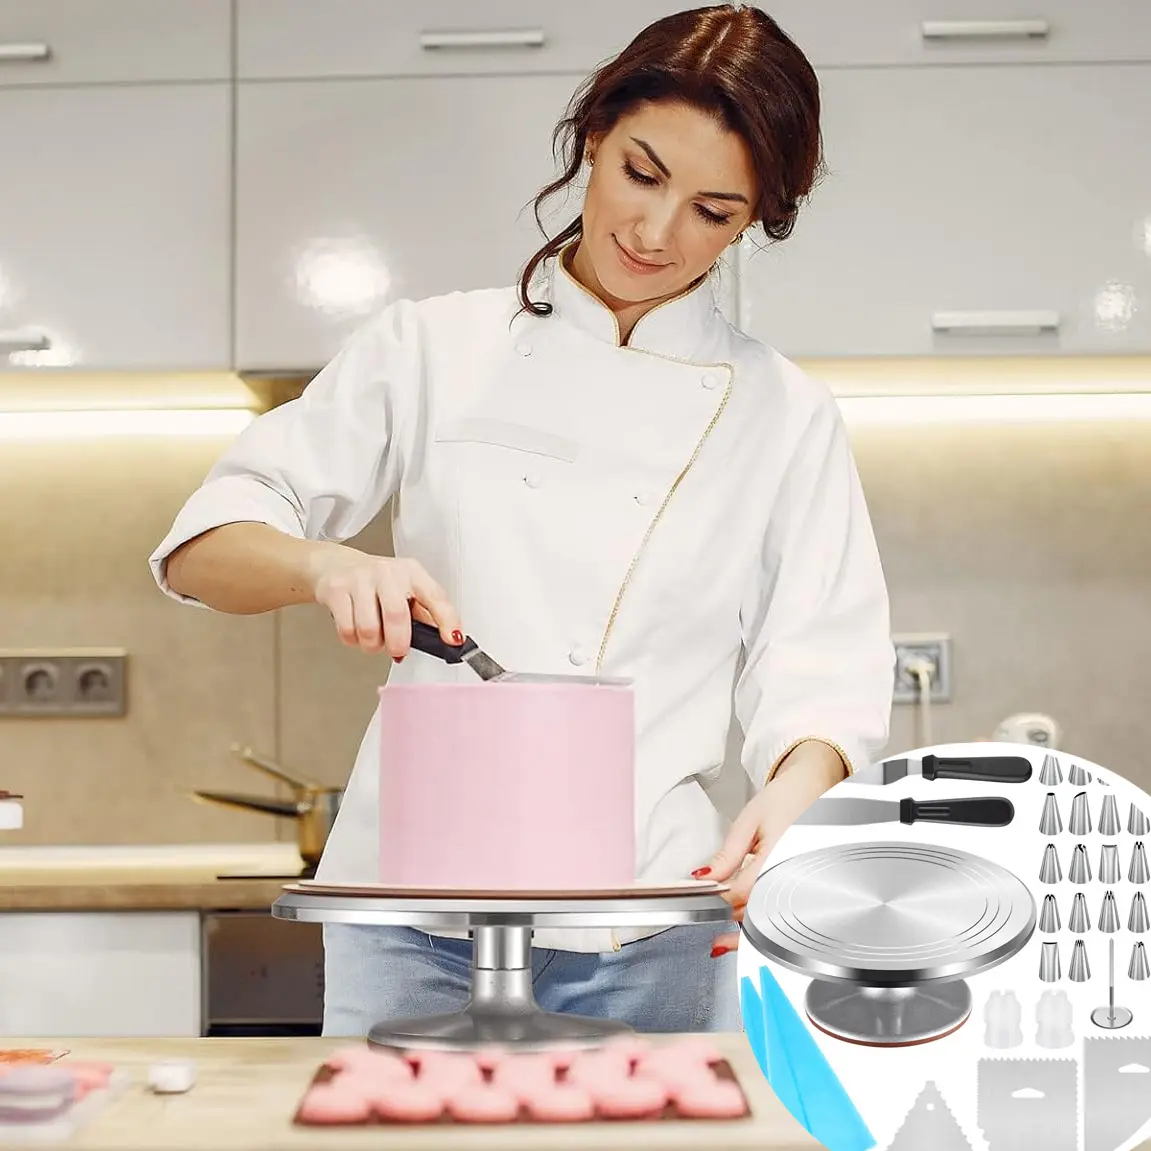 ציוד לקישוט עוגות סט קישוט עוגות אלומיניום 360 פטיפון עוגה מסתובב עם מרית קלע ושקית צנרת